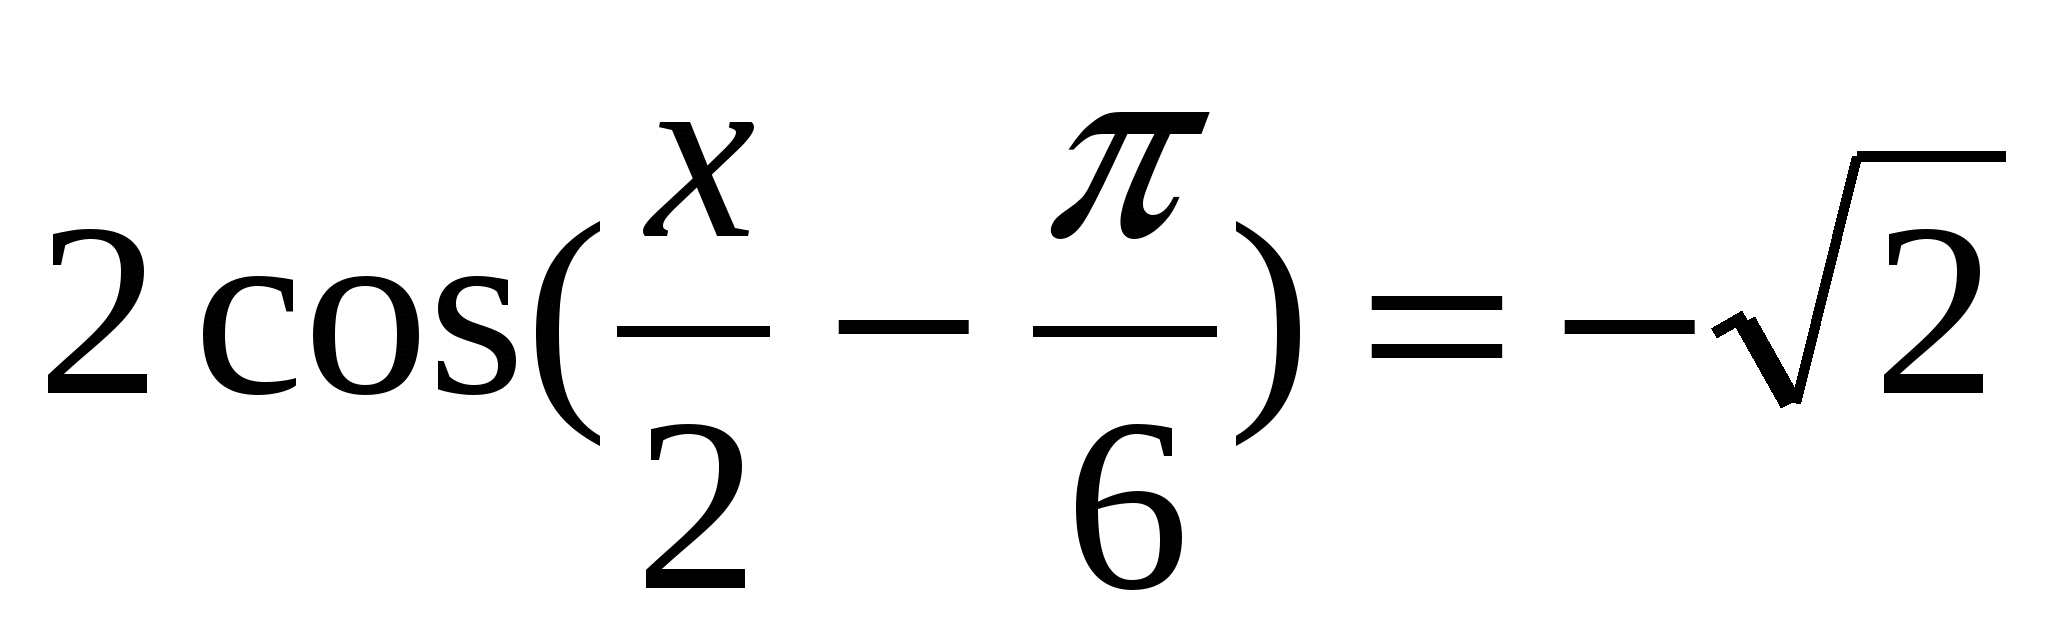 Конспект по алгебре и началам анализа на тему Простейшие тригонометрические уравнения